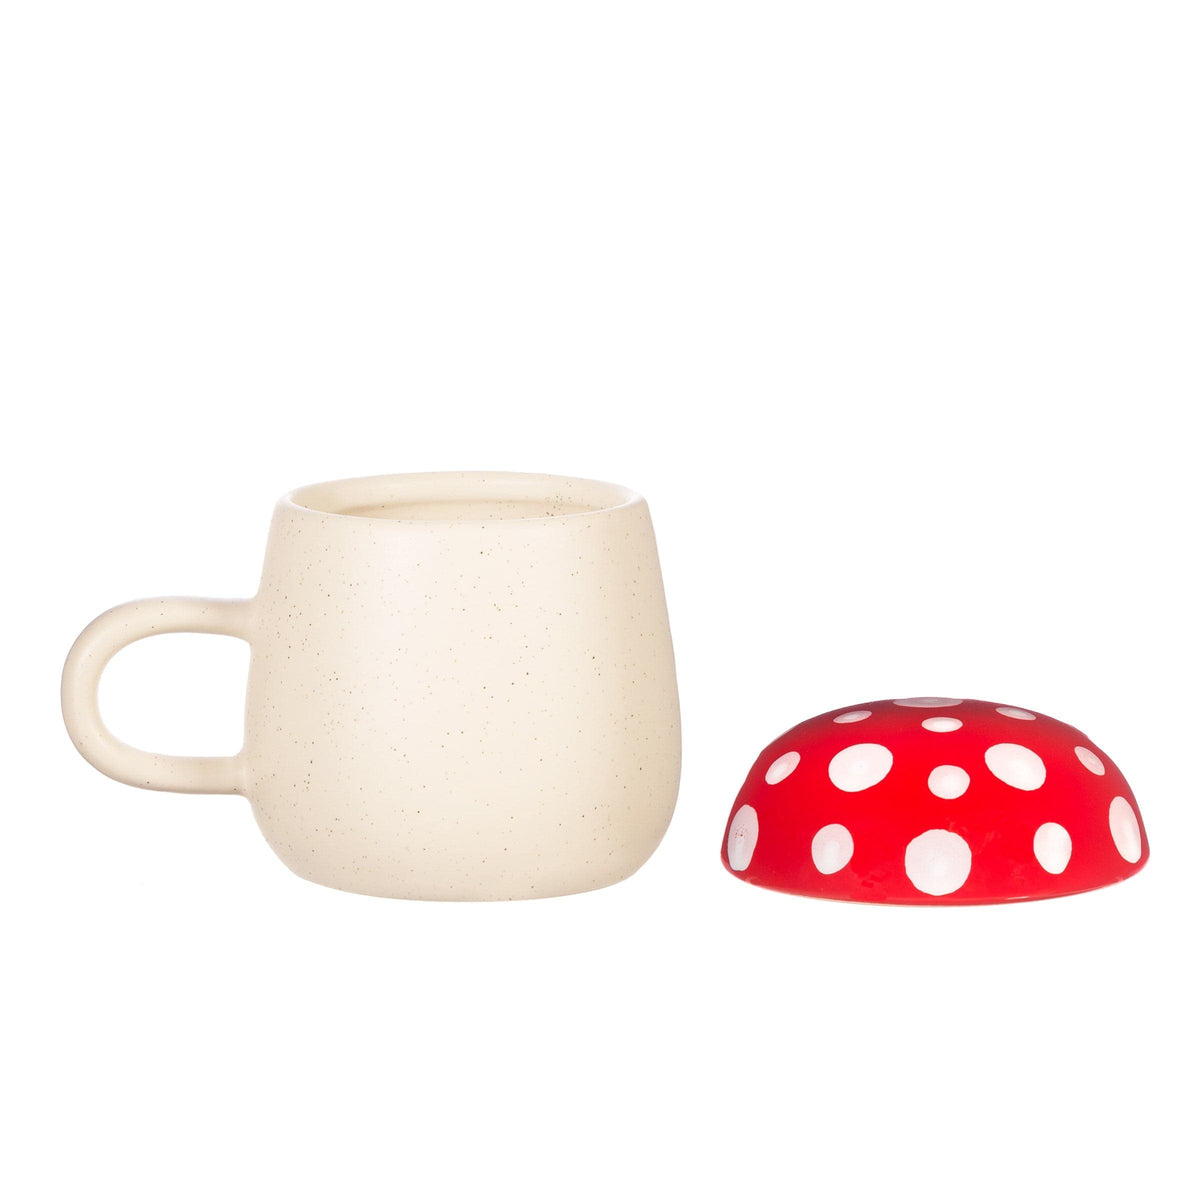 Sass & Belle Mushroom Mug, With Lid